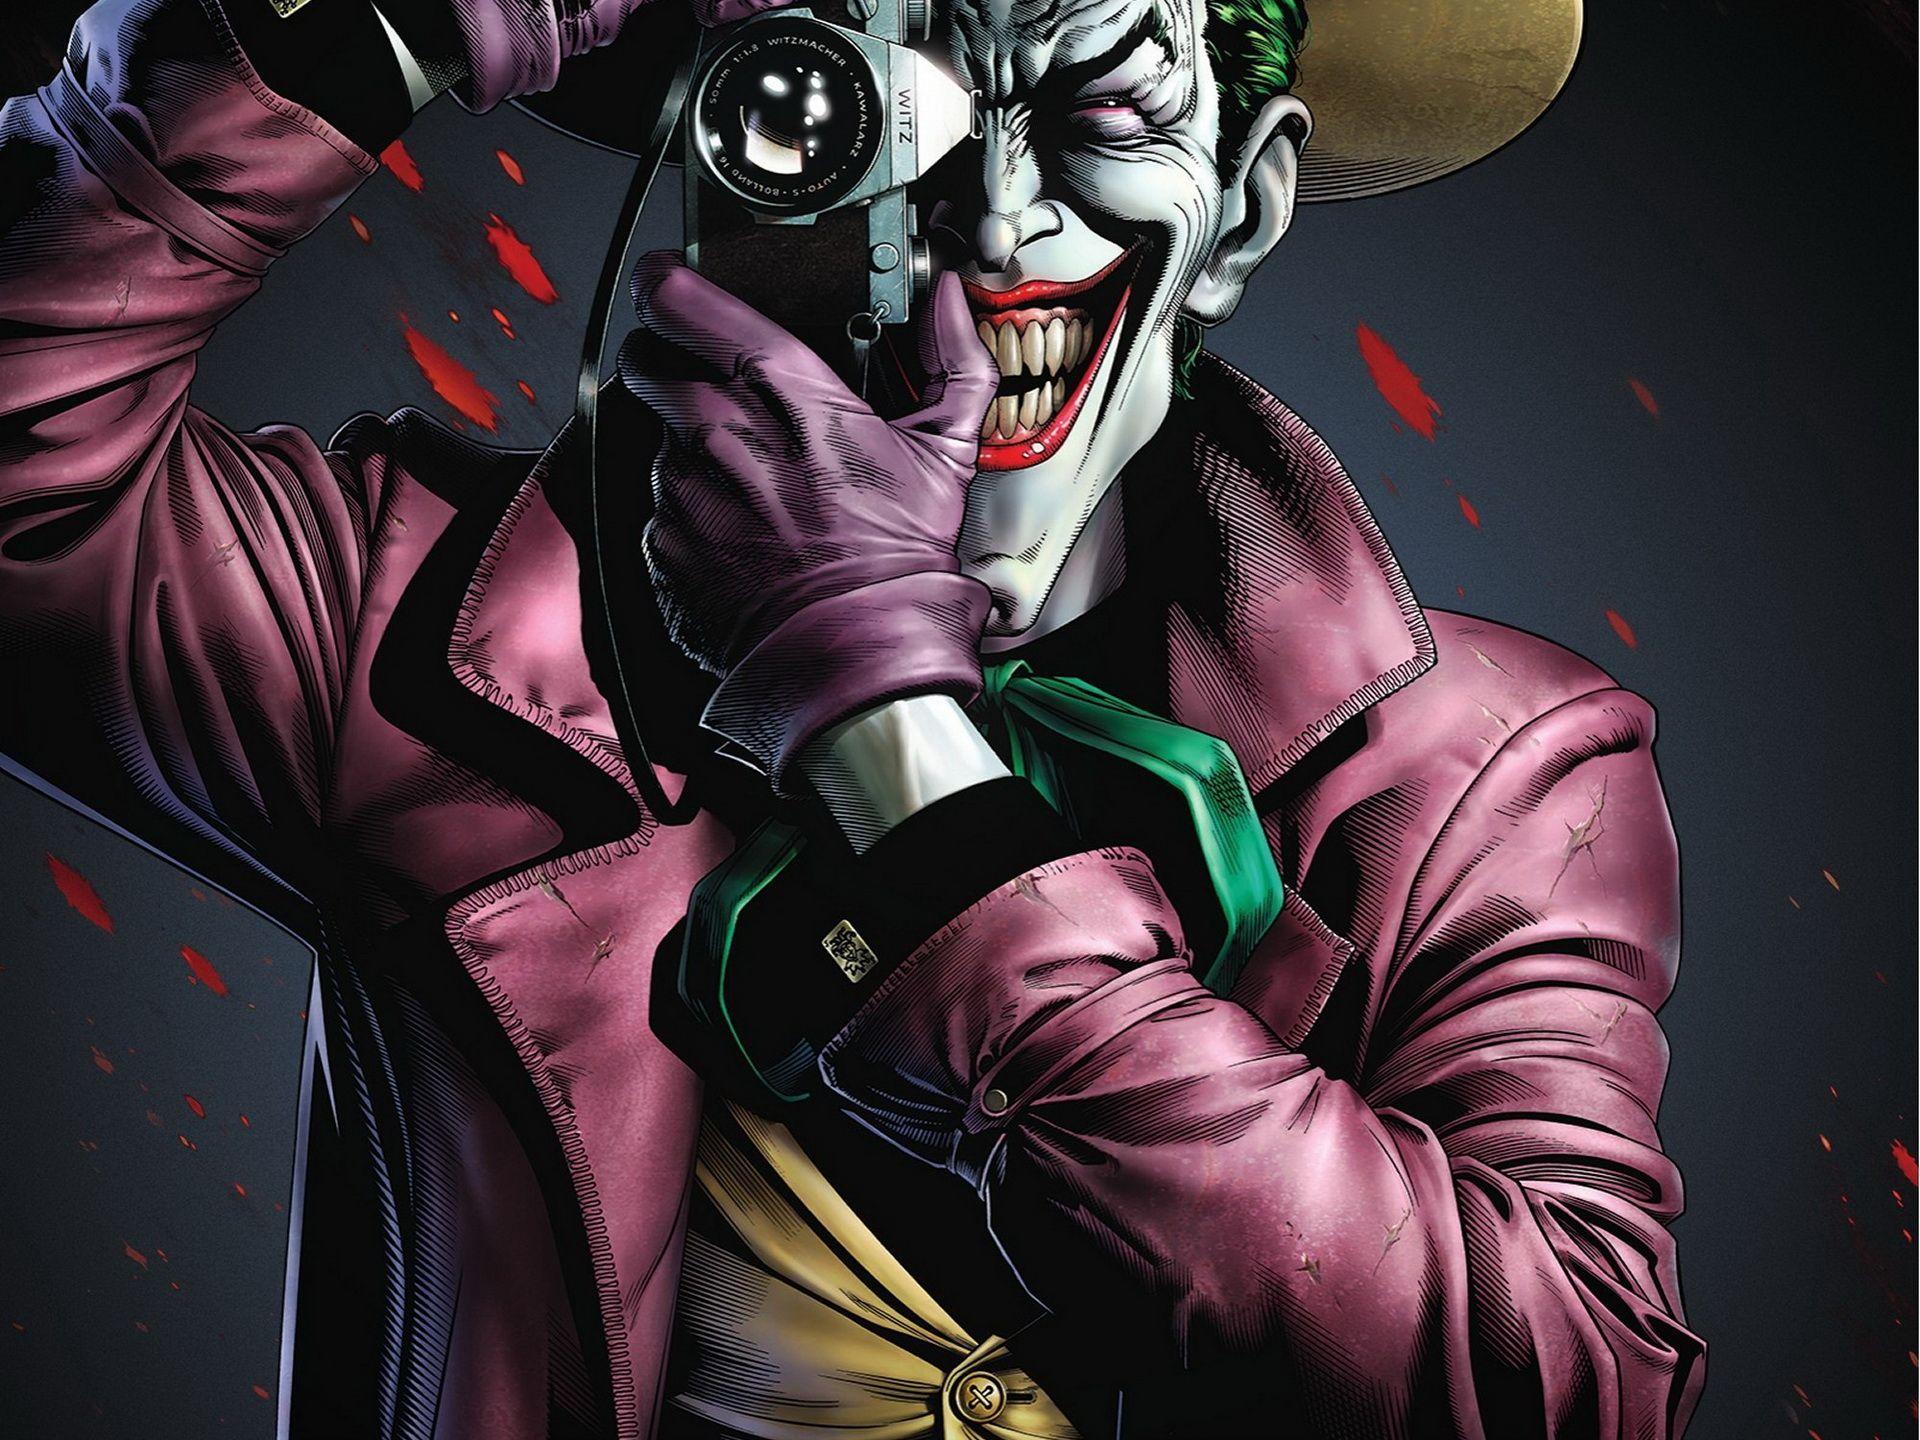 Joker Killing Joke 4K Ultra HD Wallpaper Free Joker Killing Joke 4K Ultra HD Background